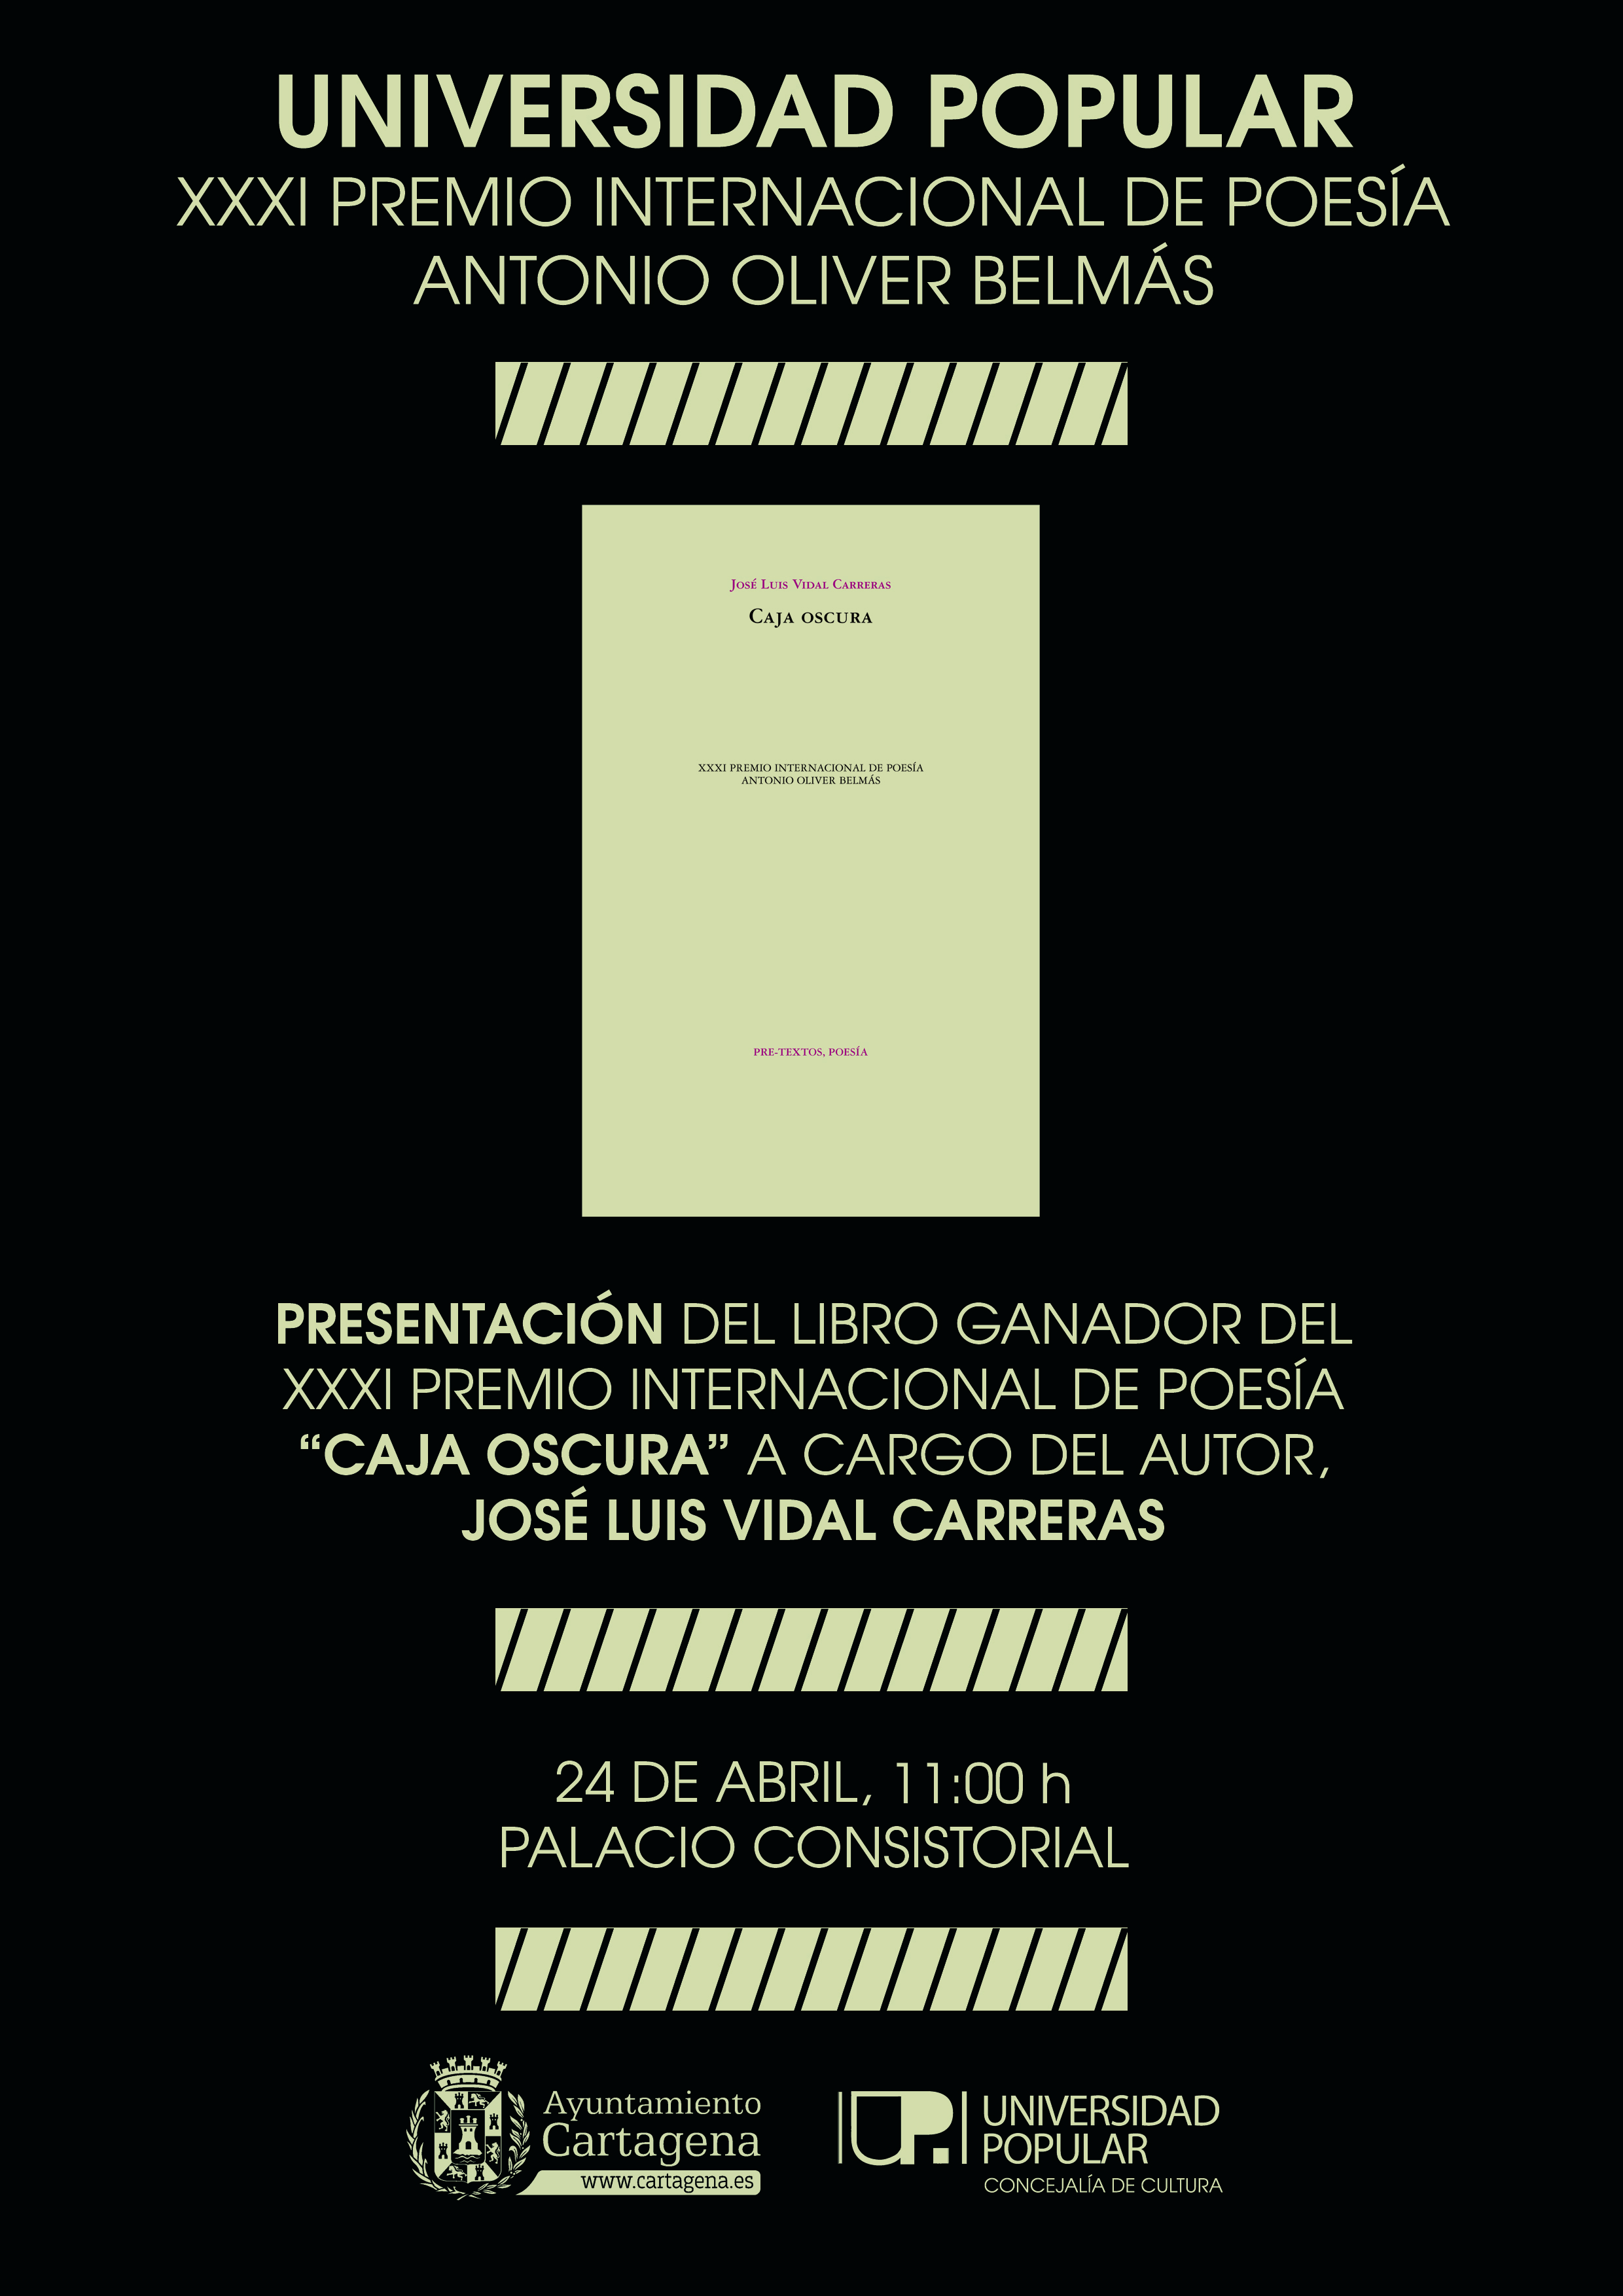 Imagen del Poster XXXI Premio Internacional de Poesía Antonio Oliver Belmás